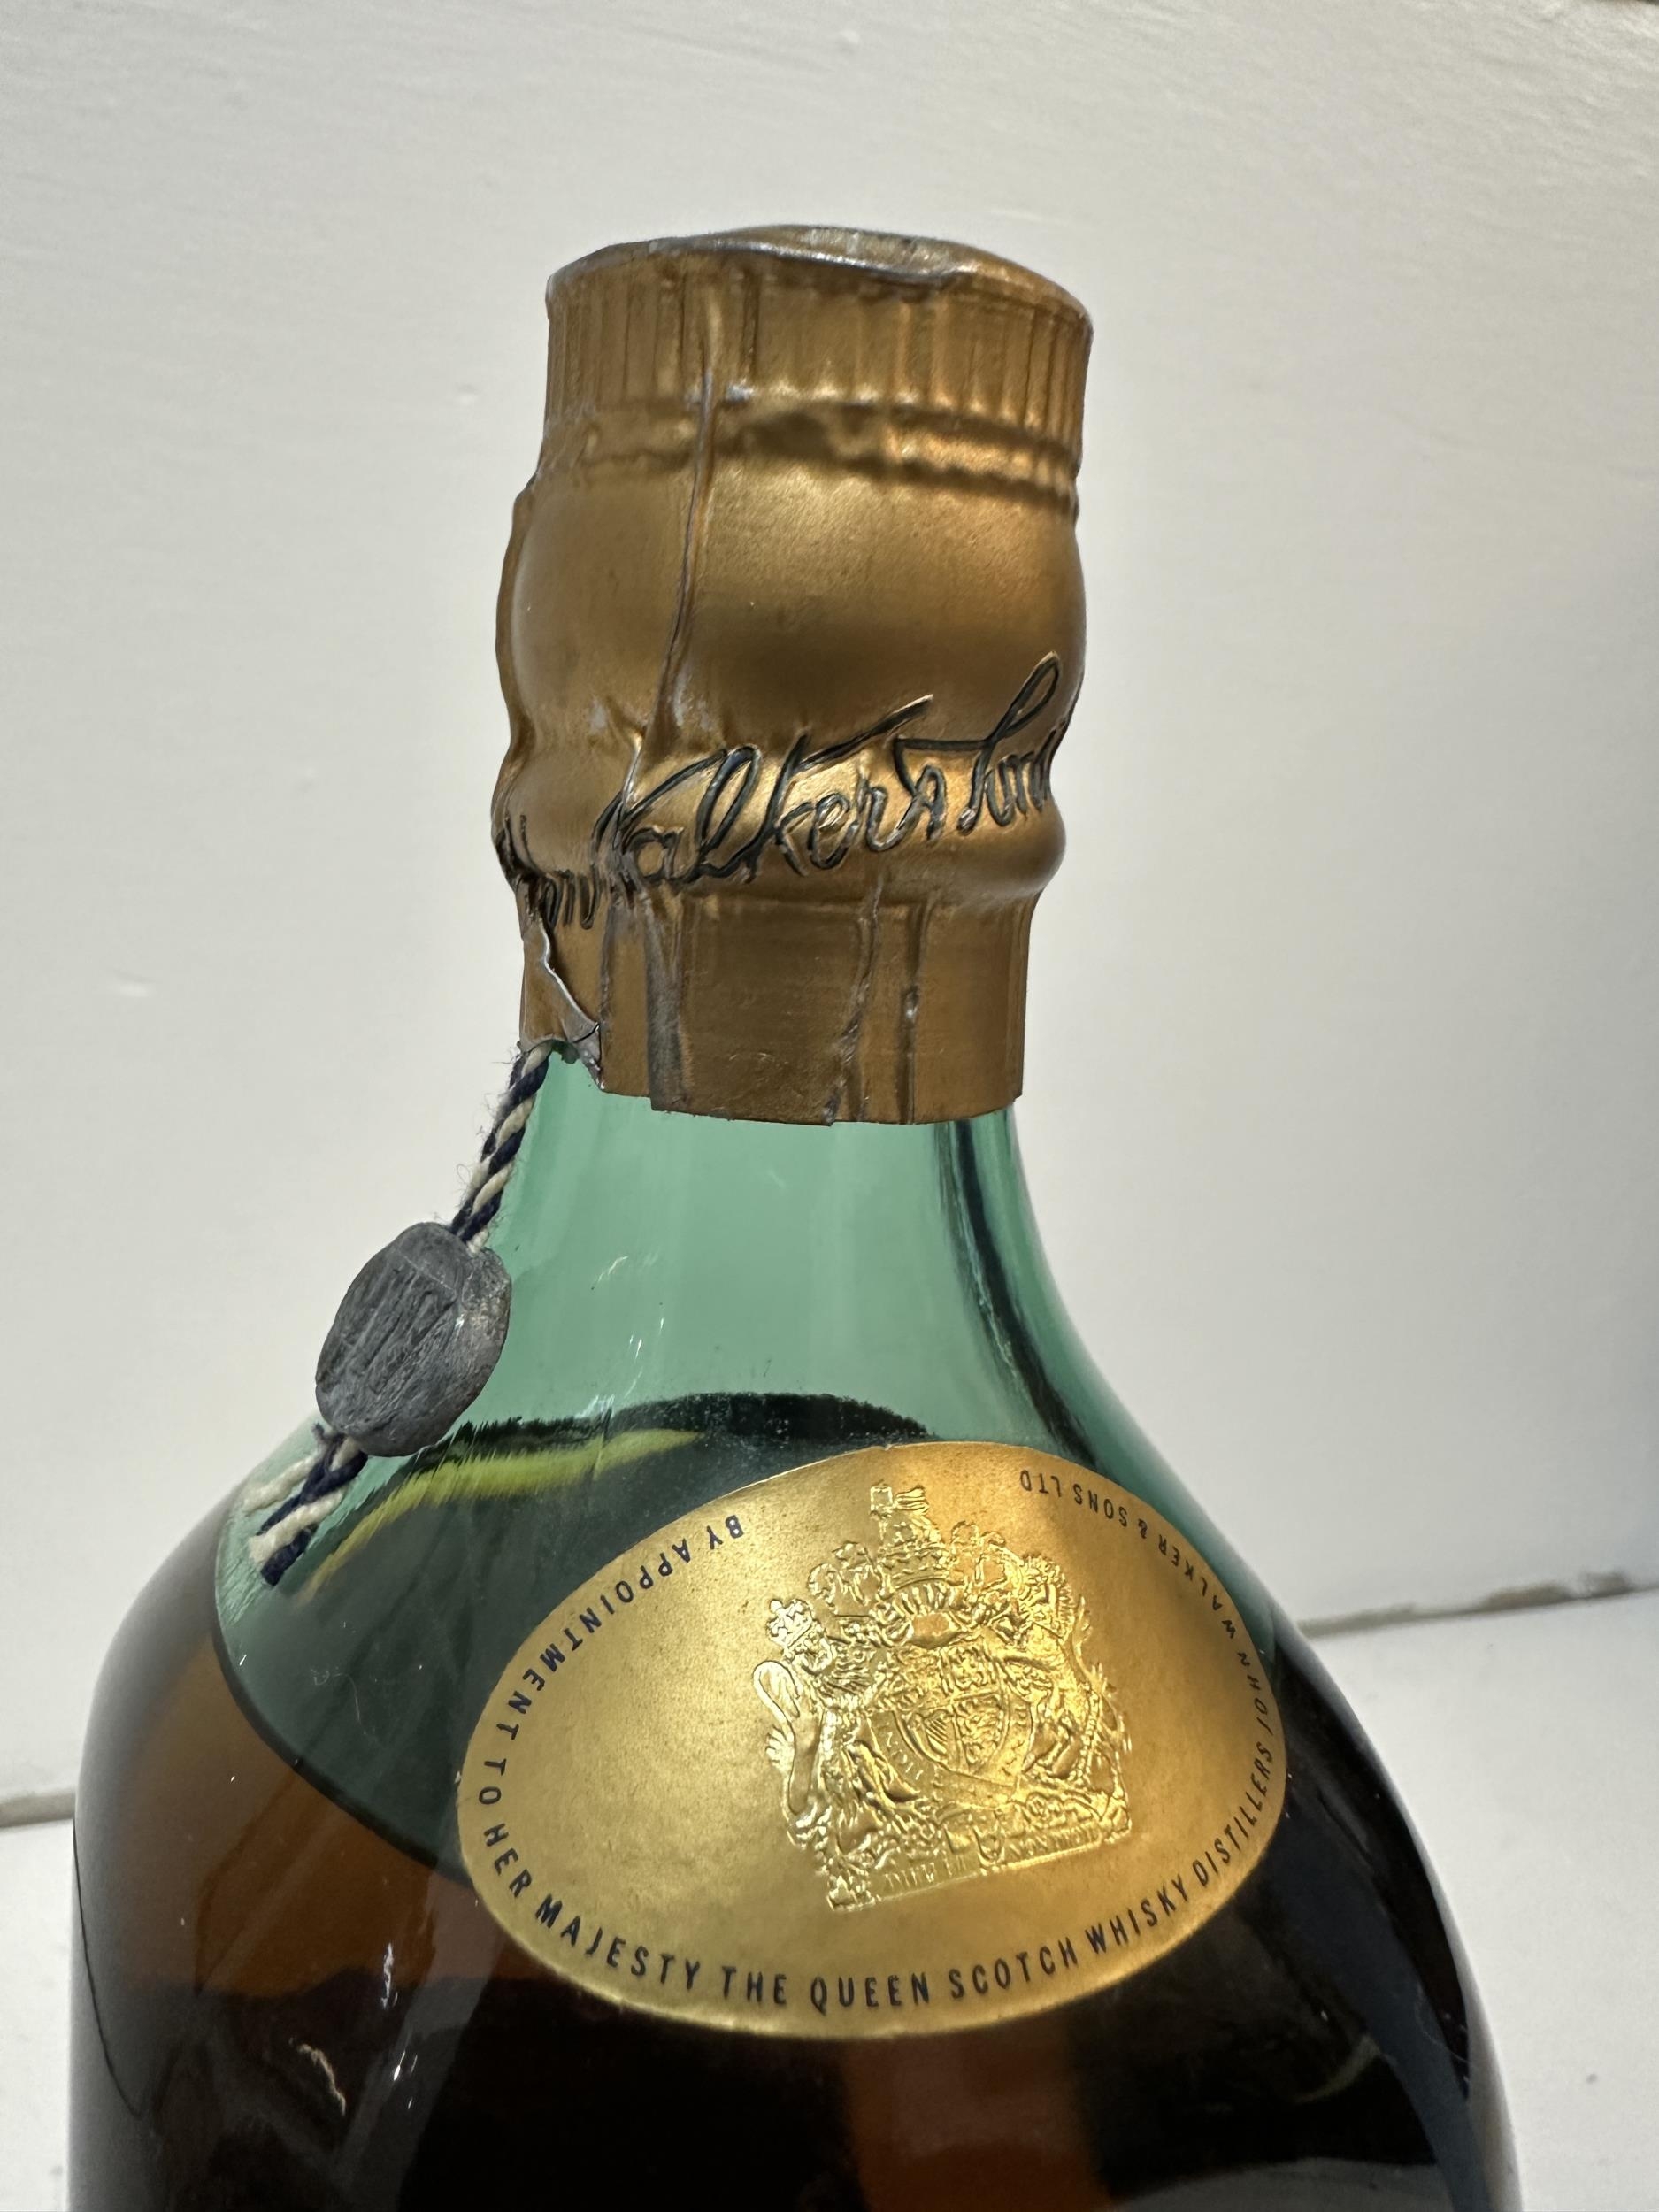 Johnnie Walker Oldest 1820 Scotch whisky, bottle no H32796 JW - Image 2 of 4